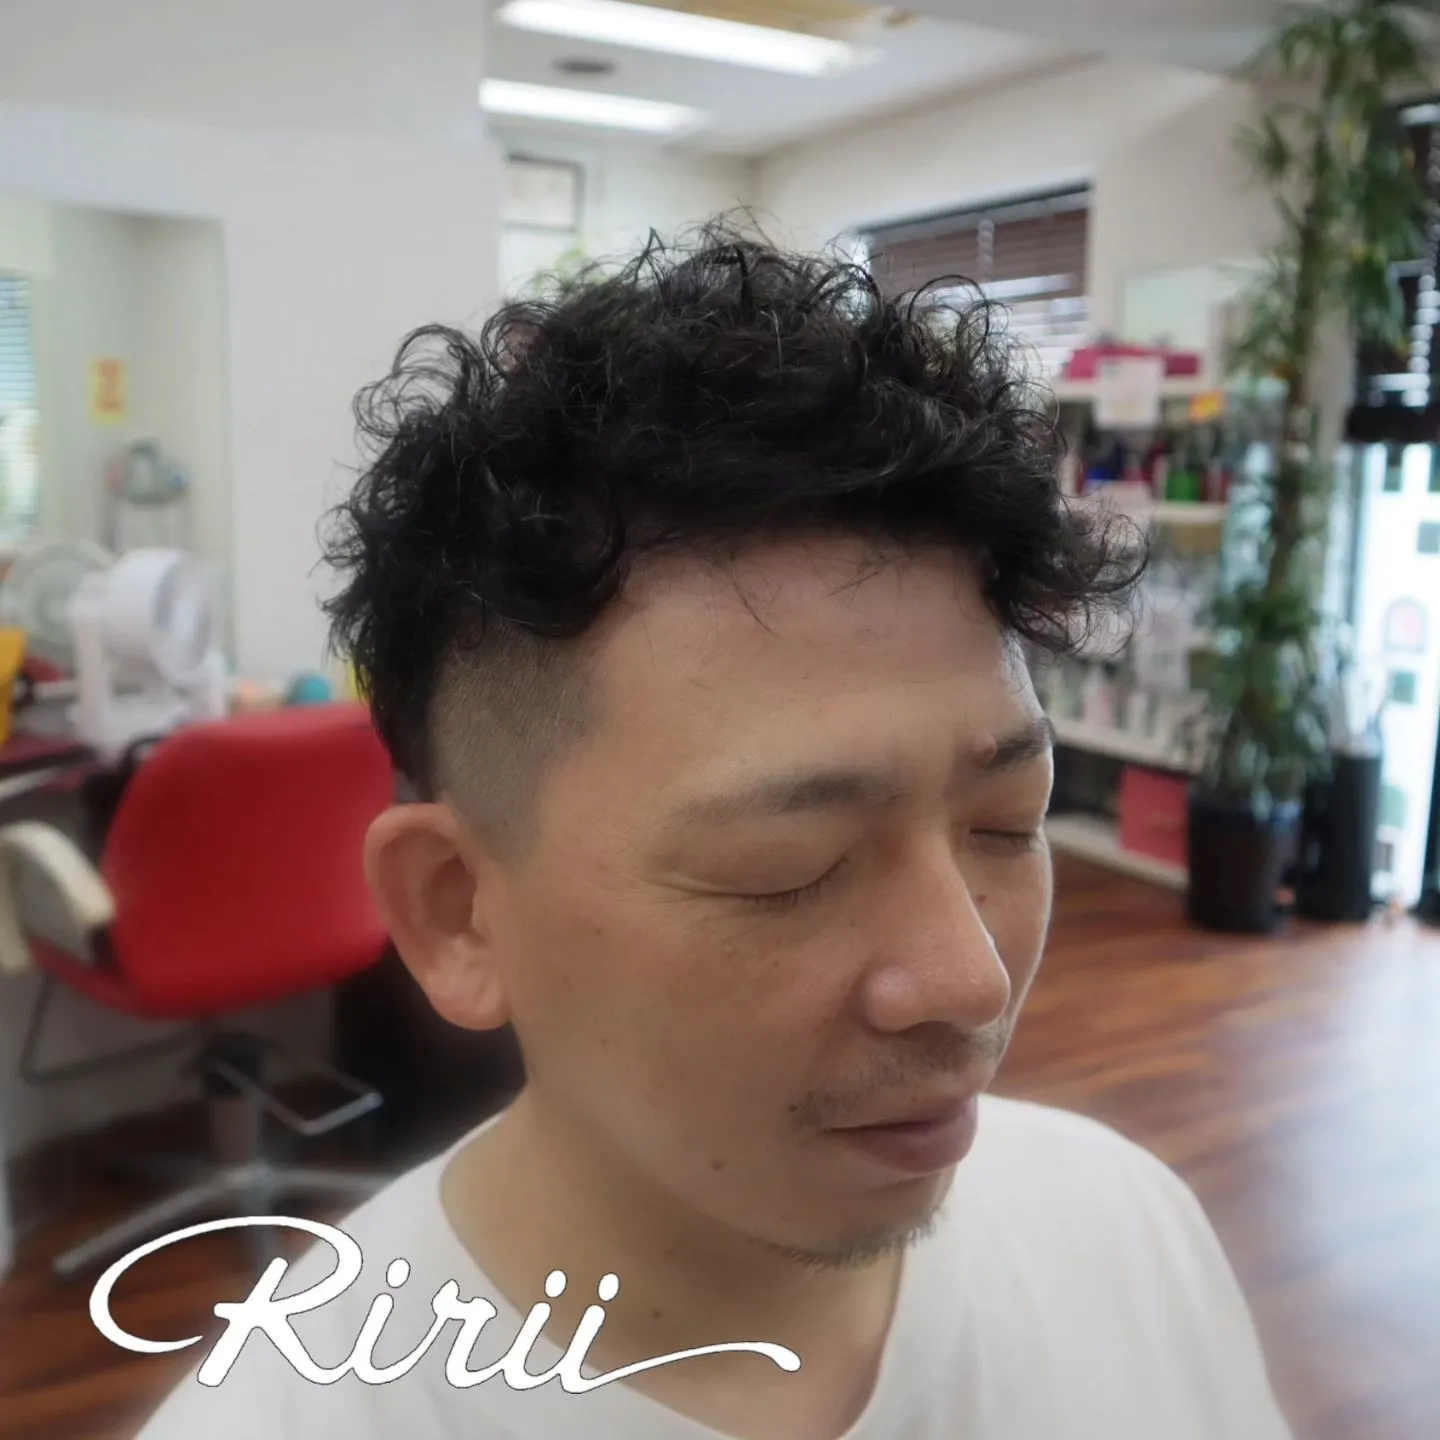 森慎太郎さん(ギターを持っている方)の髪型にしたい 芸人大好きパパさんが注文したパーマスタイル。 爽やかにチェンジです。